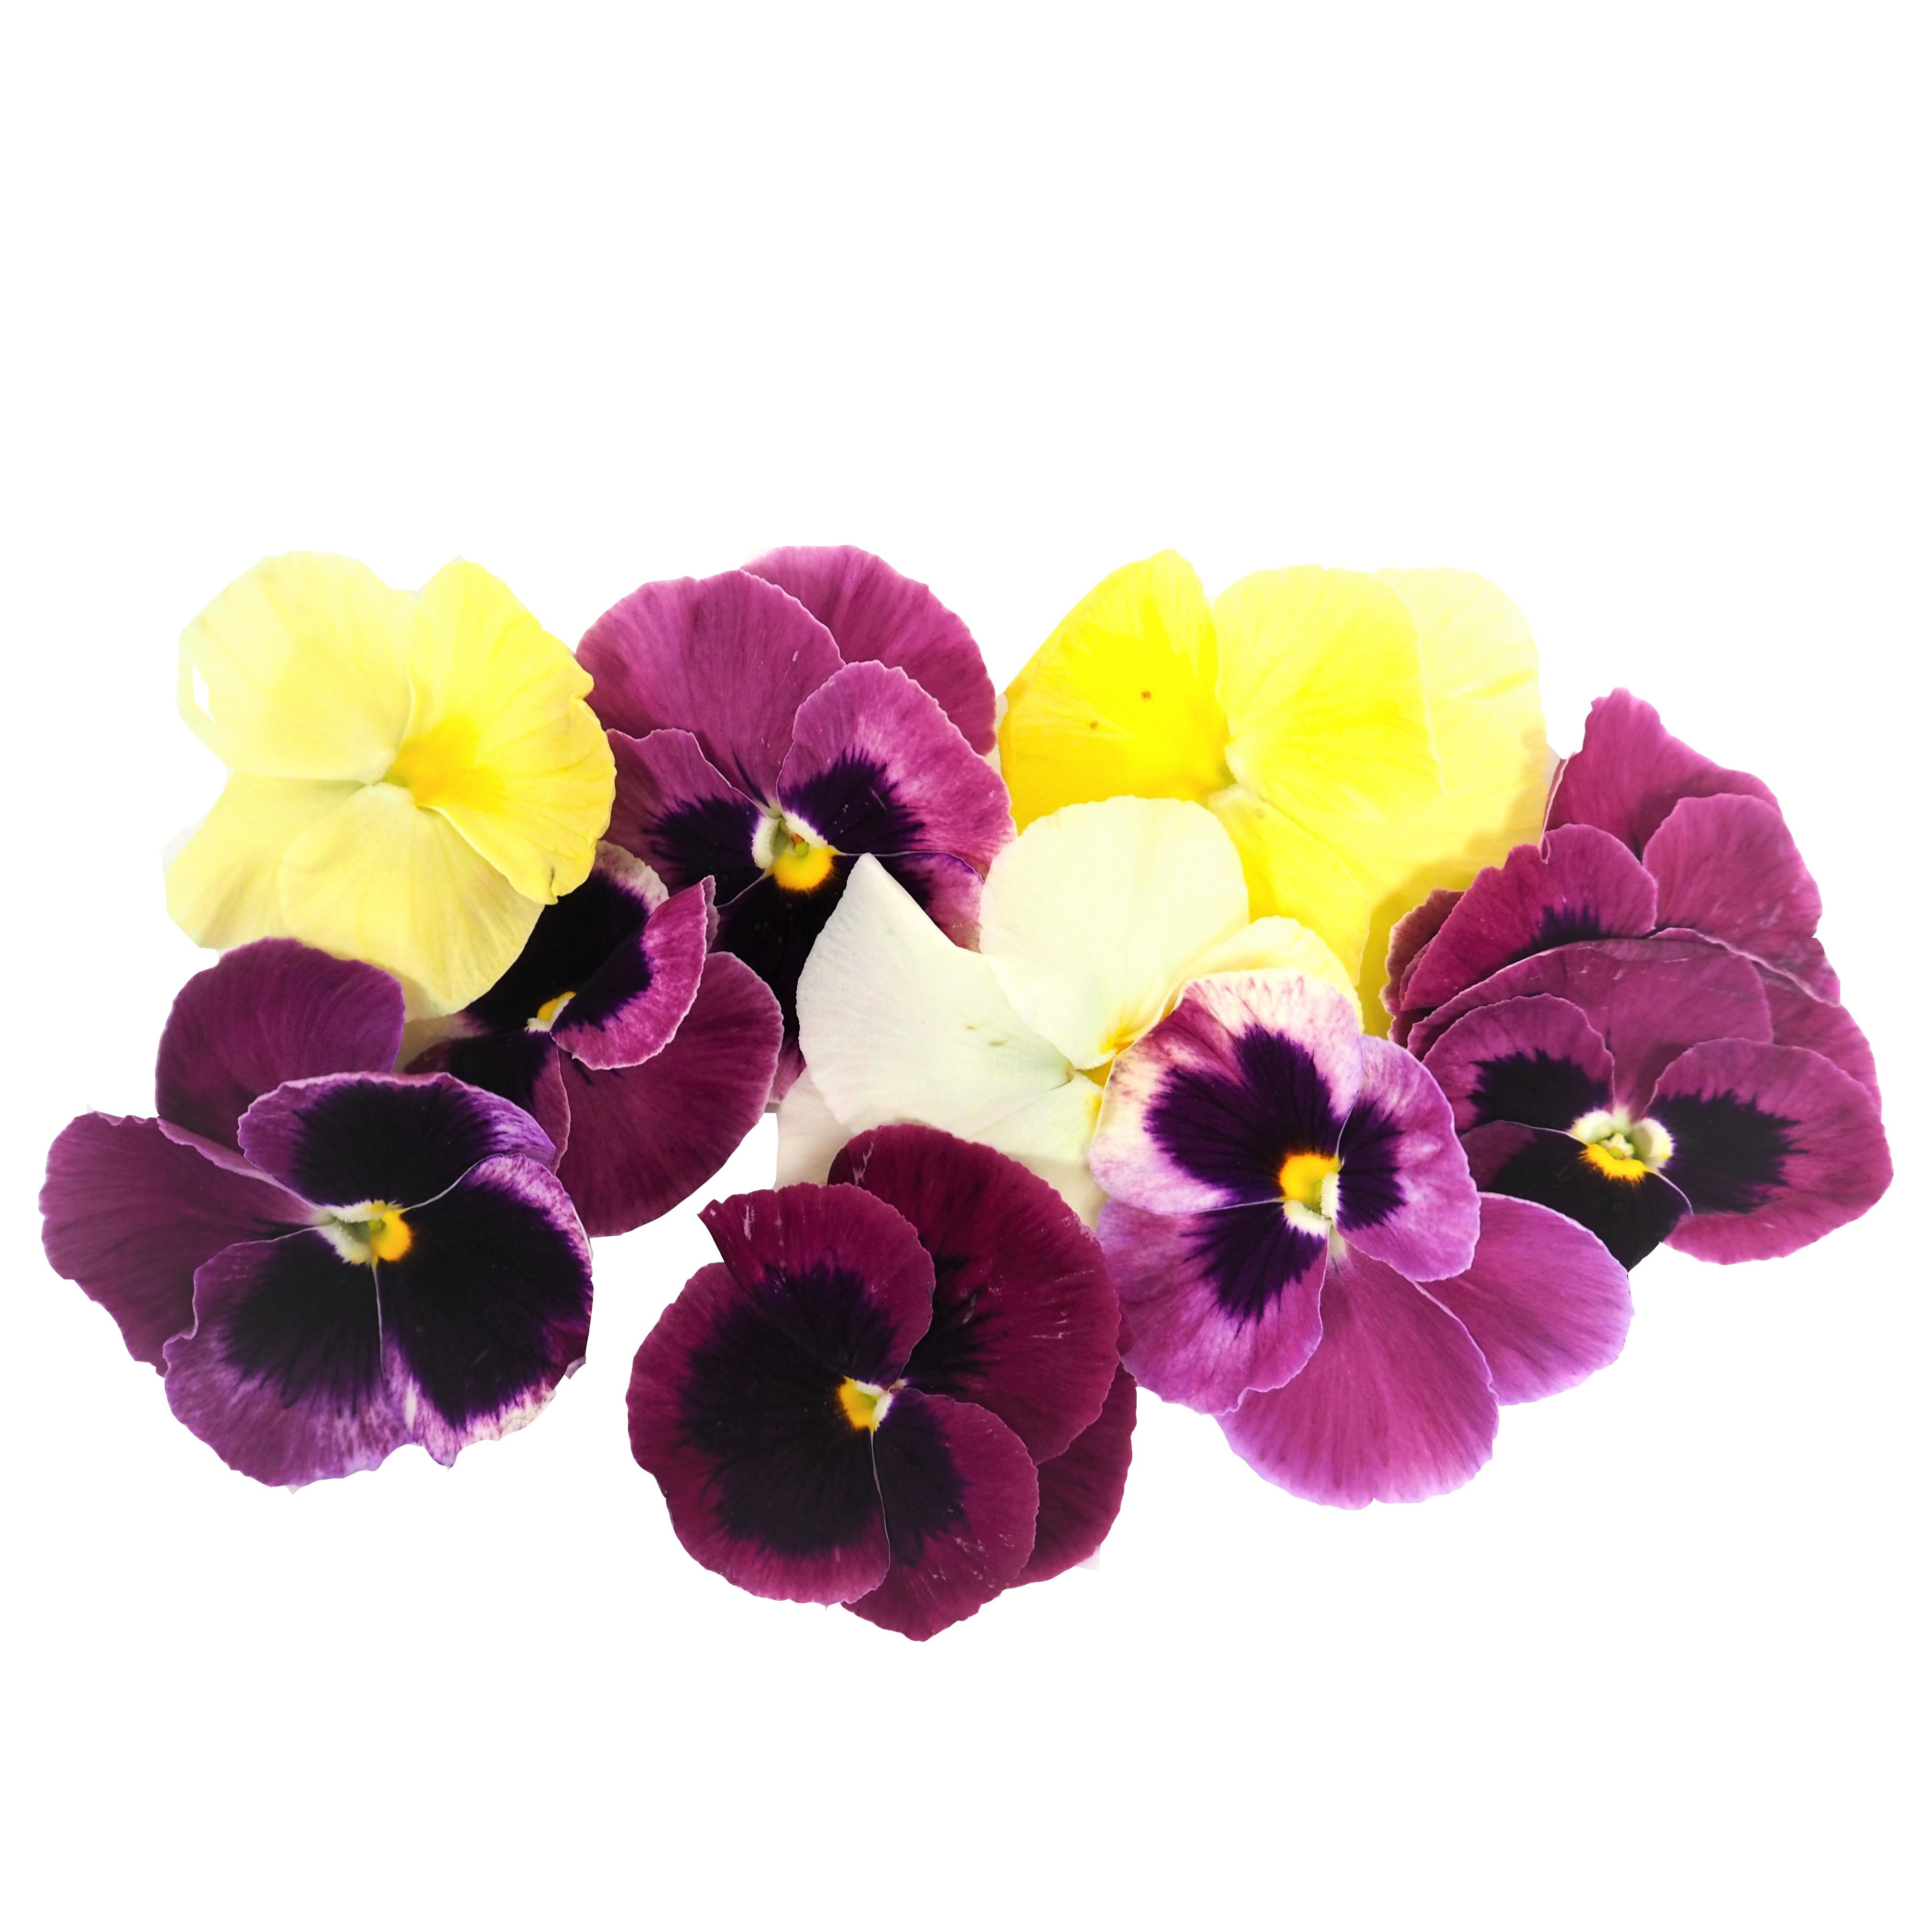 Buy Edible Pansy Flowers Online UK